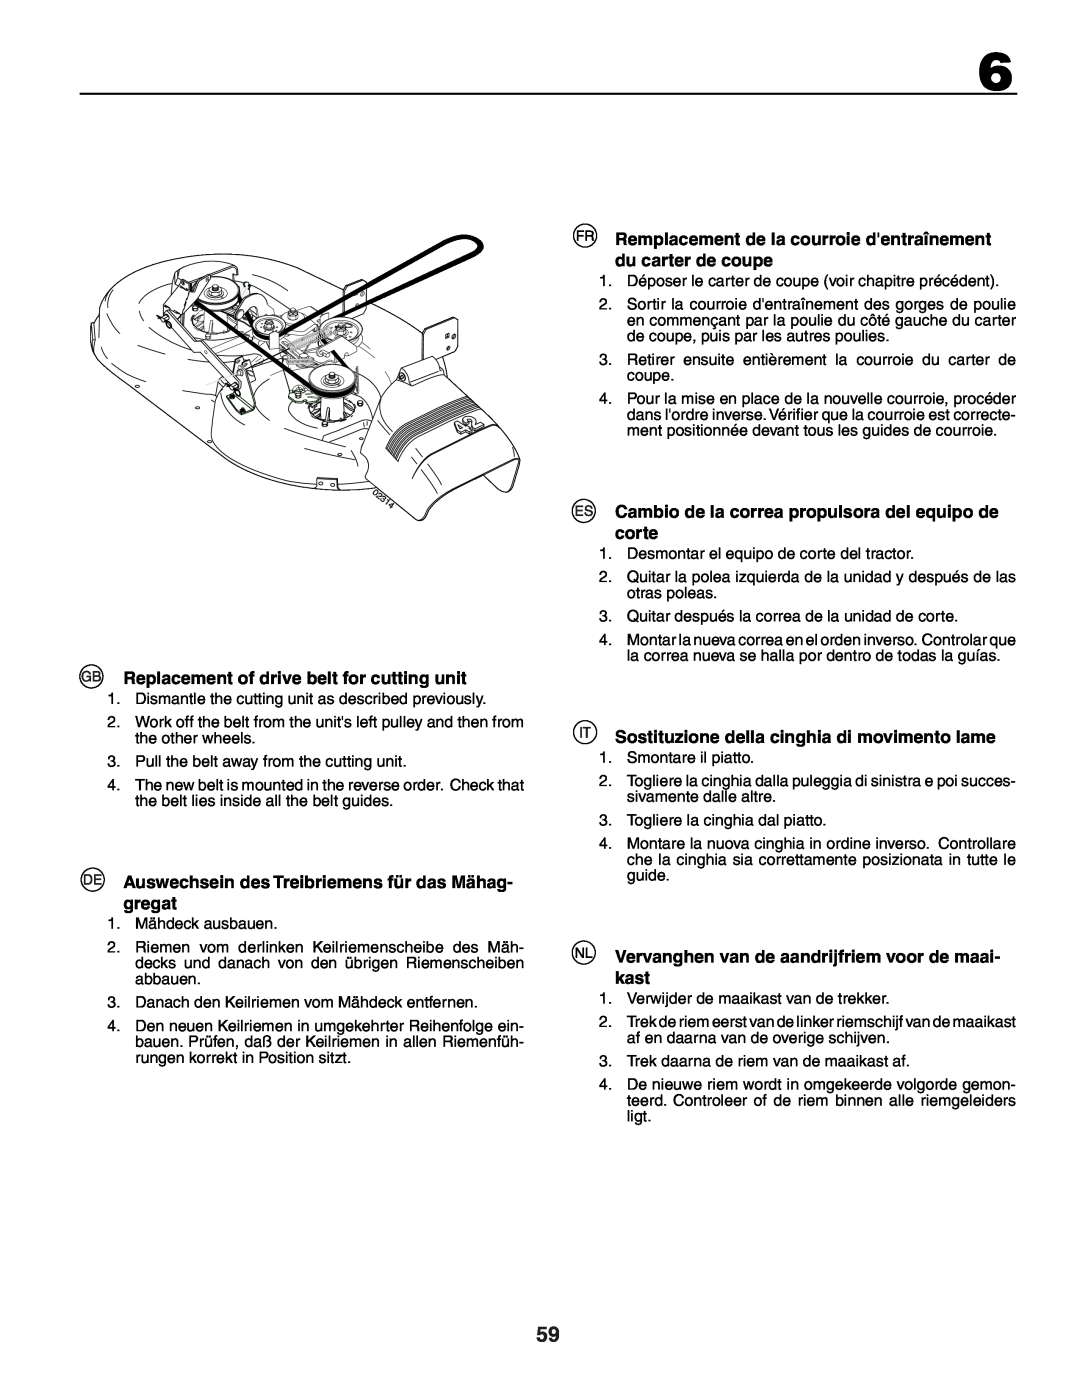 Husqvarna YTH150XP Replacement of drive belt for cutting unit, Sostituzione della cinghia di movimento lame 